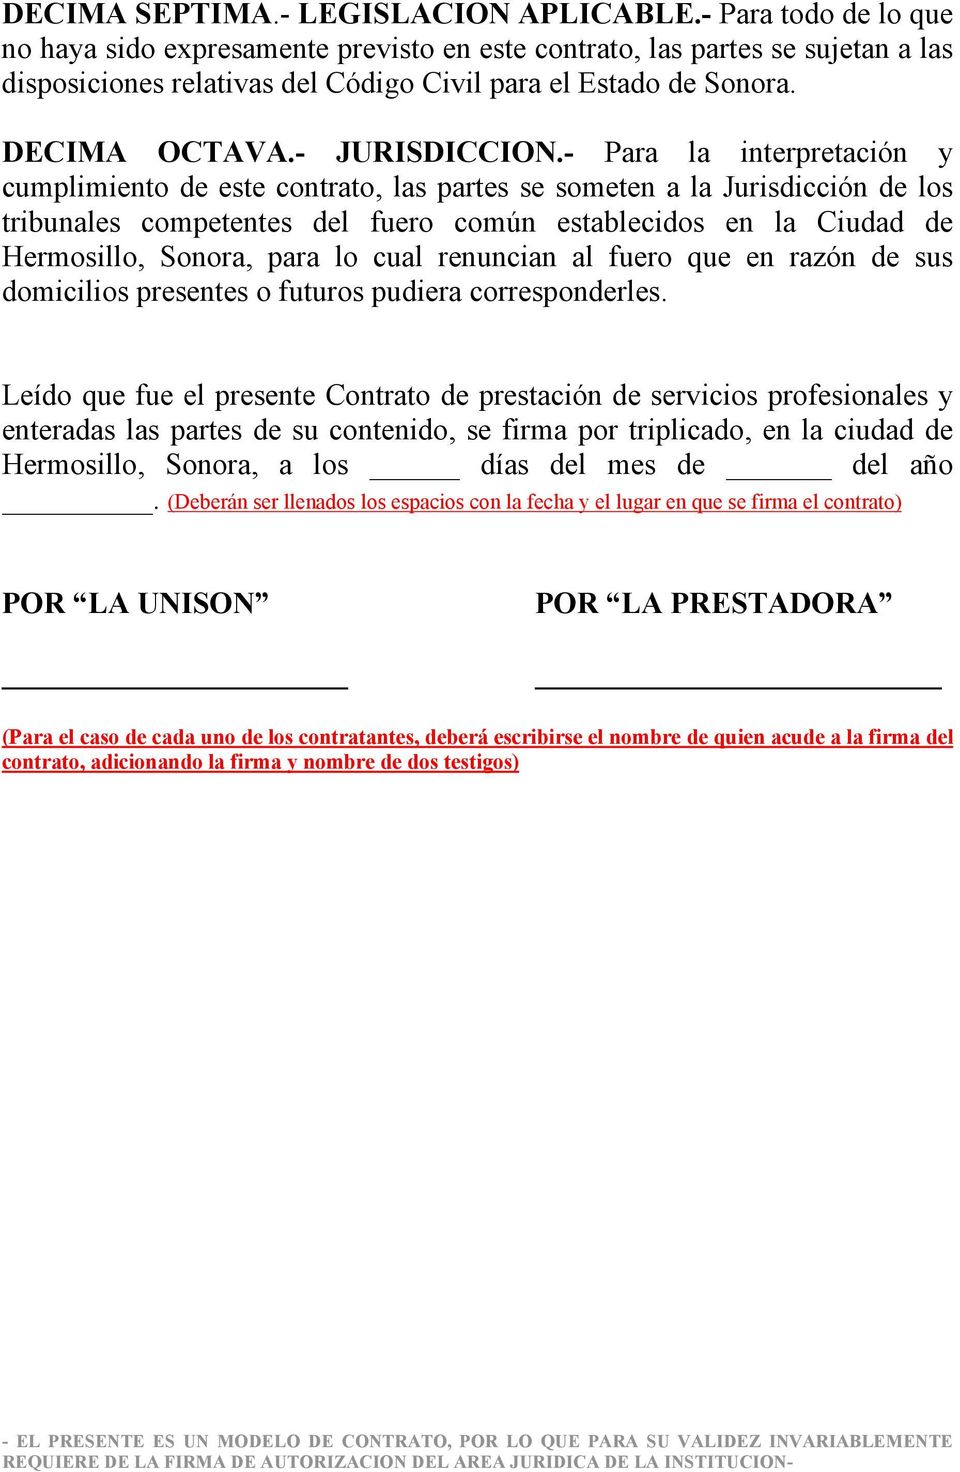 - Para la interpretación y cumplimiento de este contrato, las partes se someten a la Jurisdicción de los tribunales competentes del fuero común establecidos en la Ciudad de Hermosillo, Sonora, para